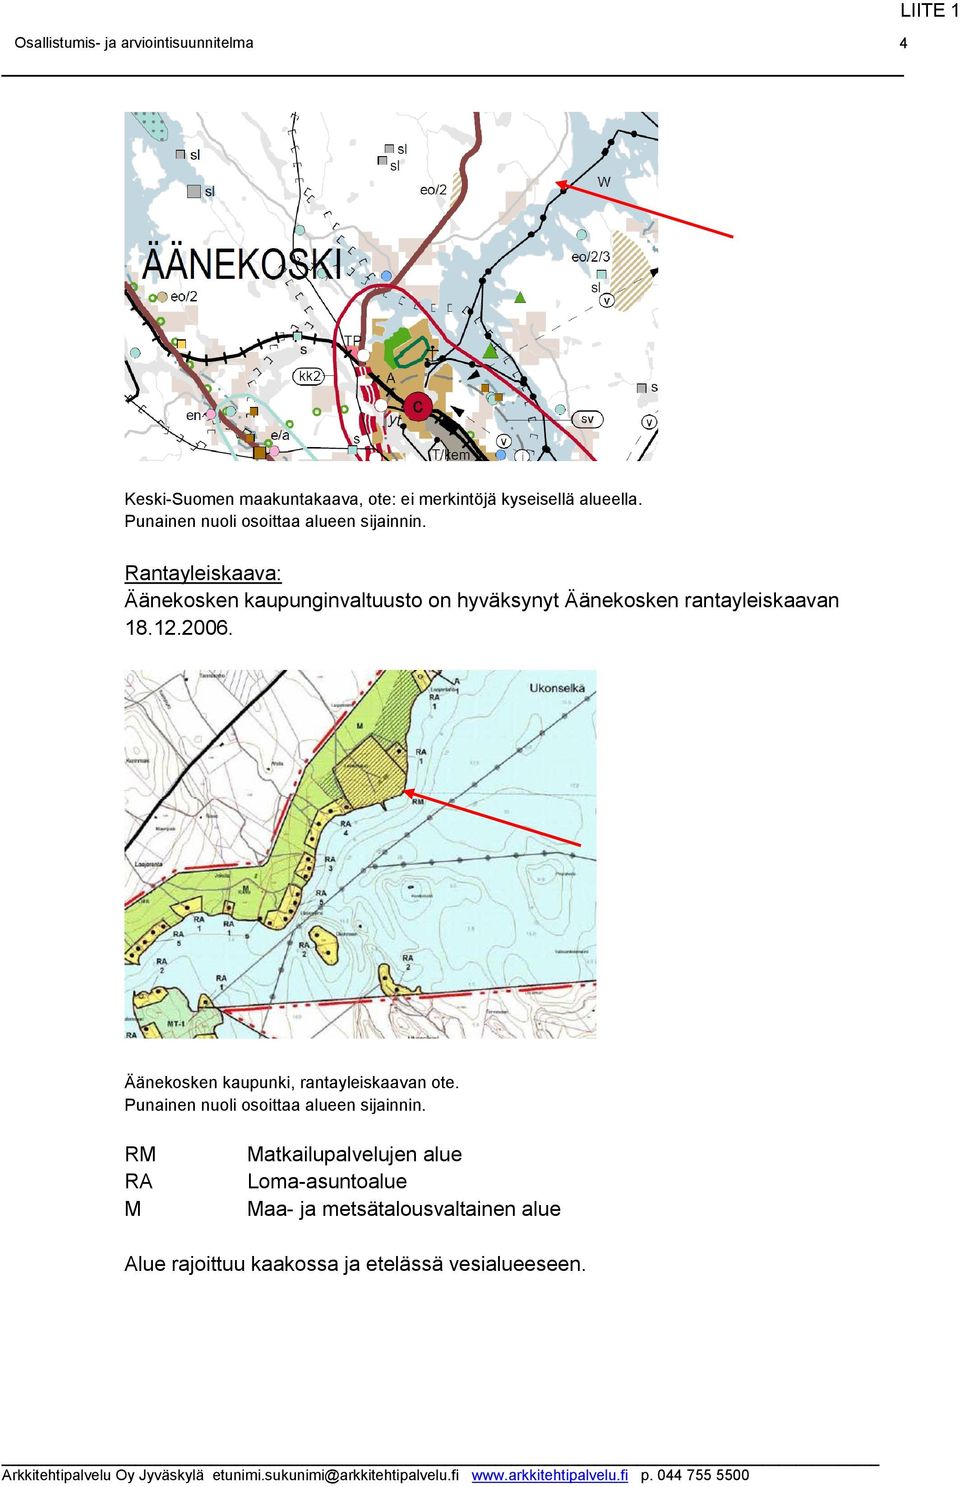 Rantayleiskaava: Äänekosken kaupunginvaltuusto on hyväksynyt Äänekosken rantayleiskaavan 18.12.2006.